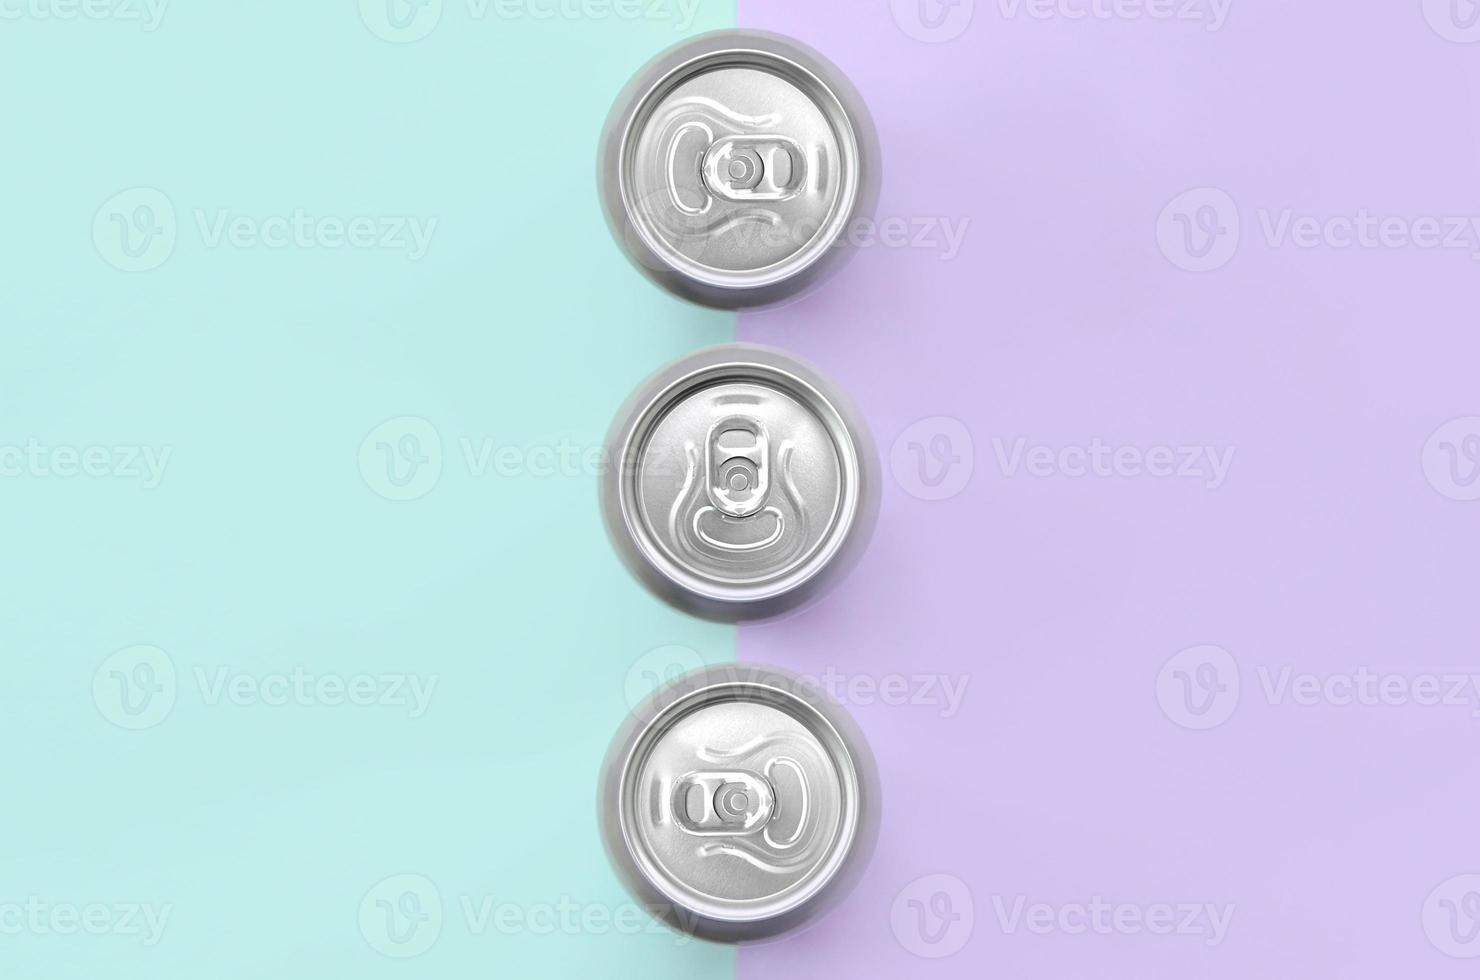 muitas latas de cerveja metálica no fundo de textura de papel de cores violeta e azul pastel de moda em conceito mínimo foto